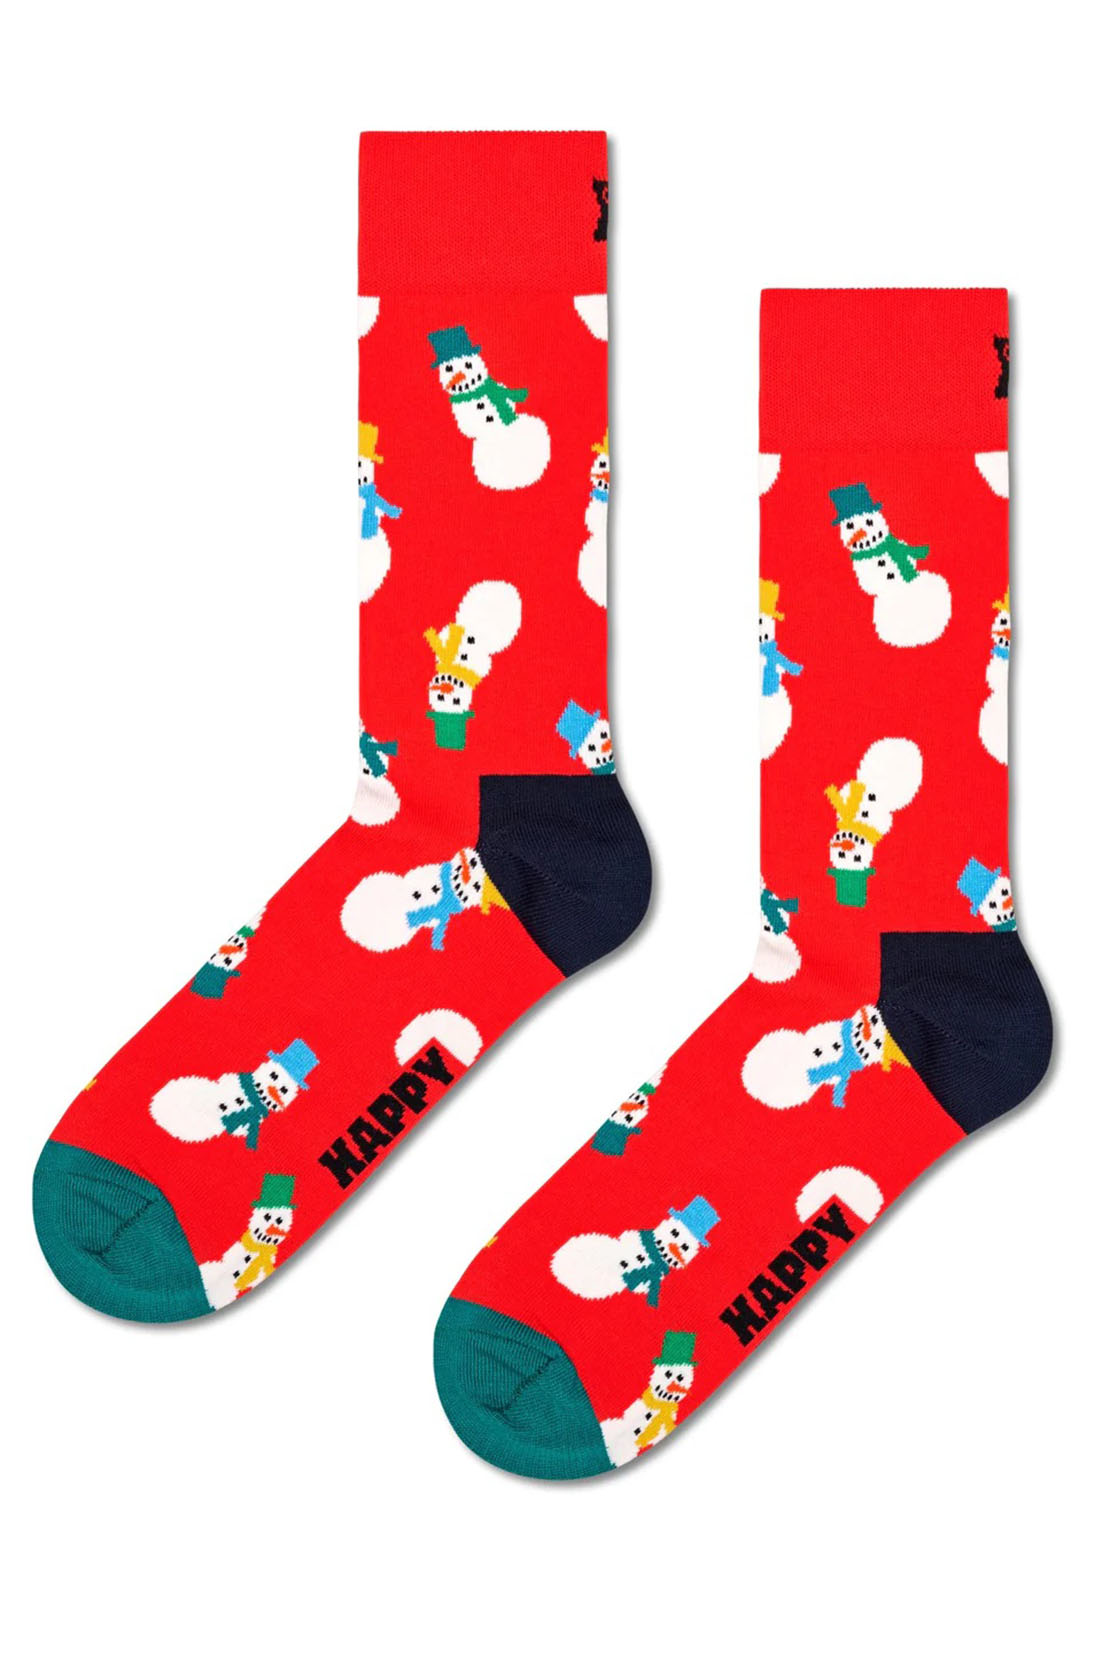 HAPPY SOCKS - 3 PACK SNOWMAN Socks Gift Set P000332